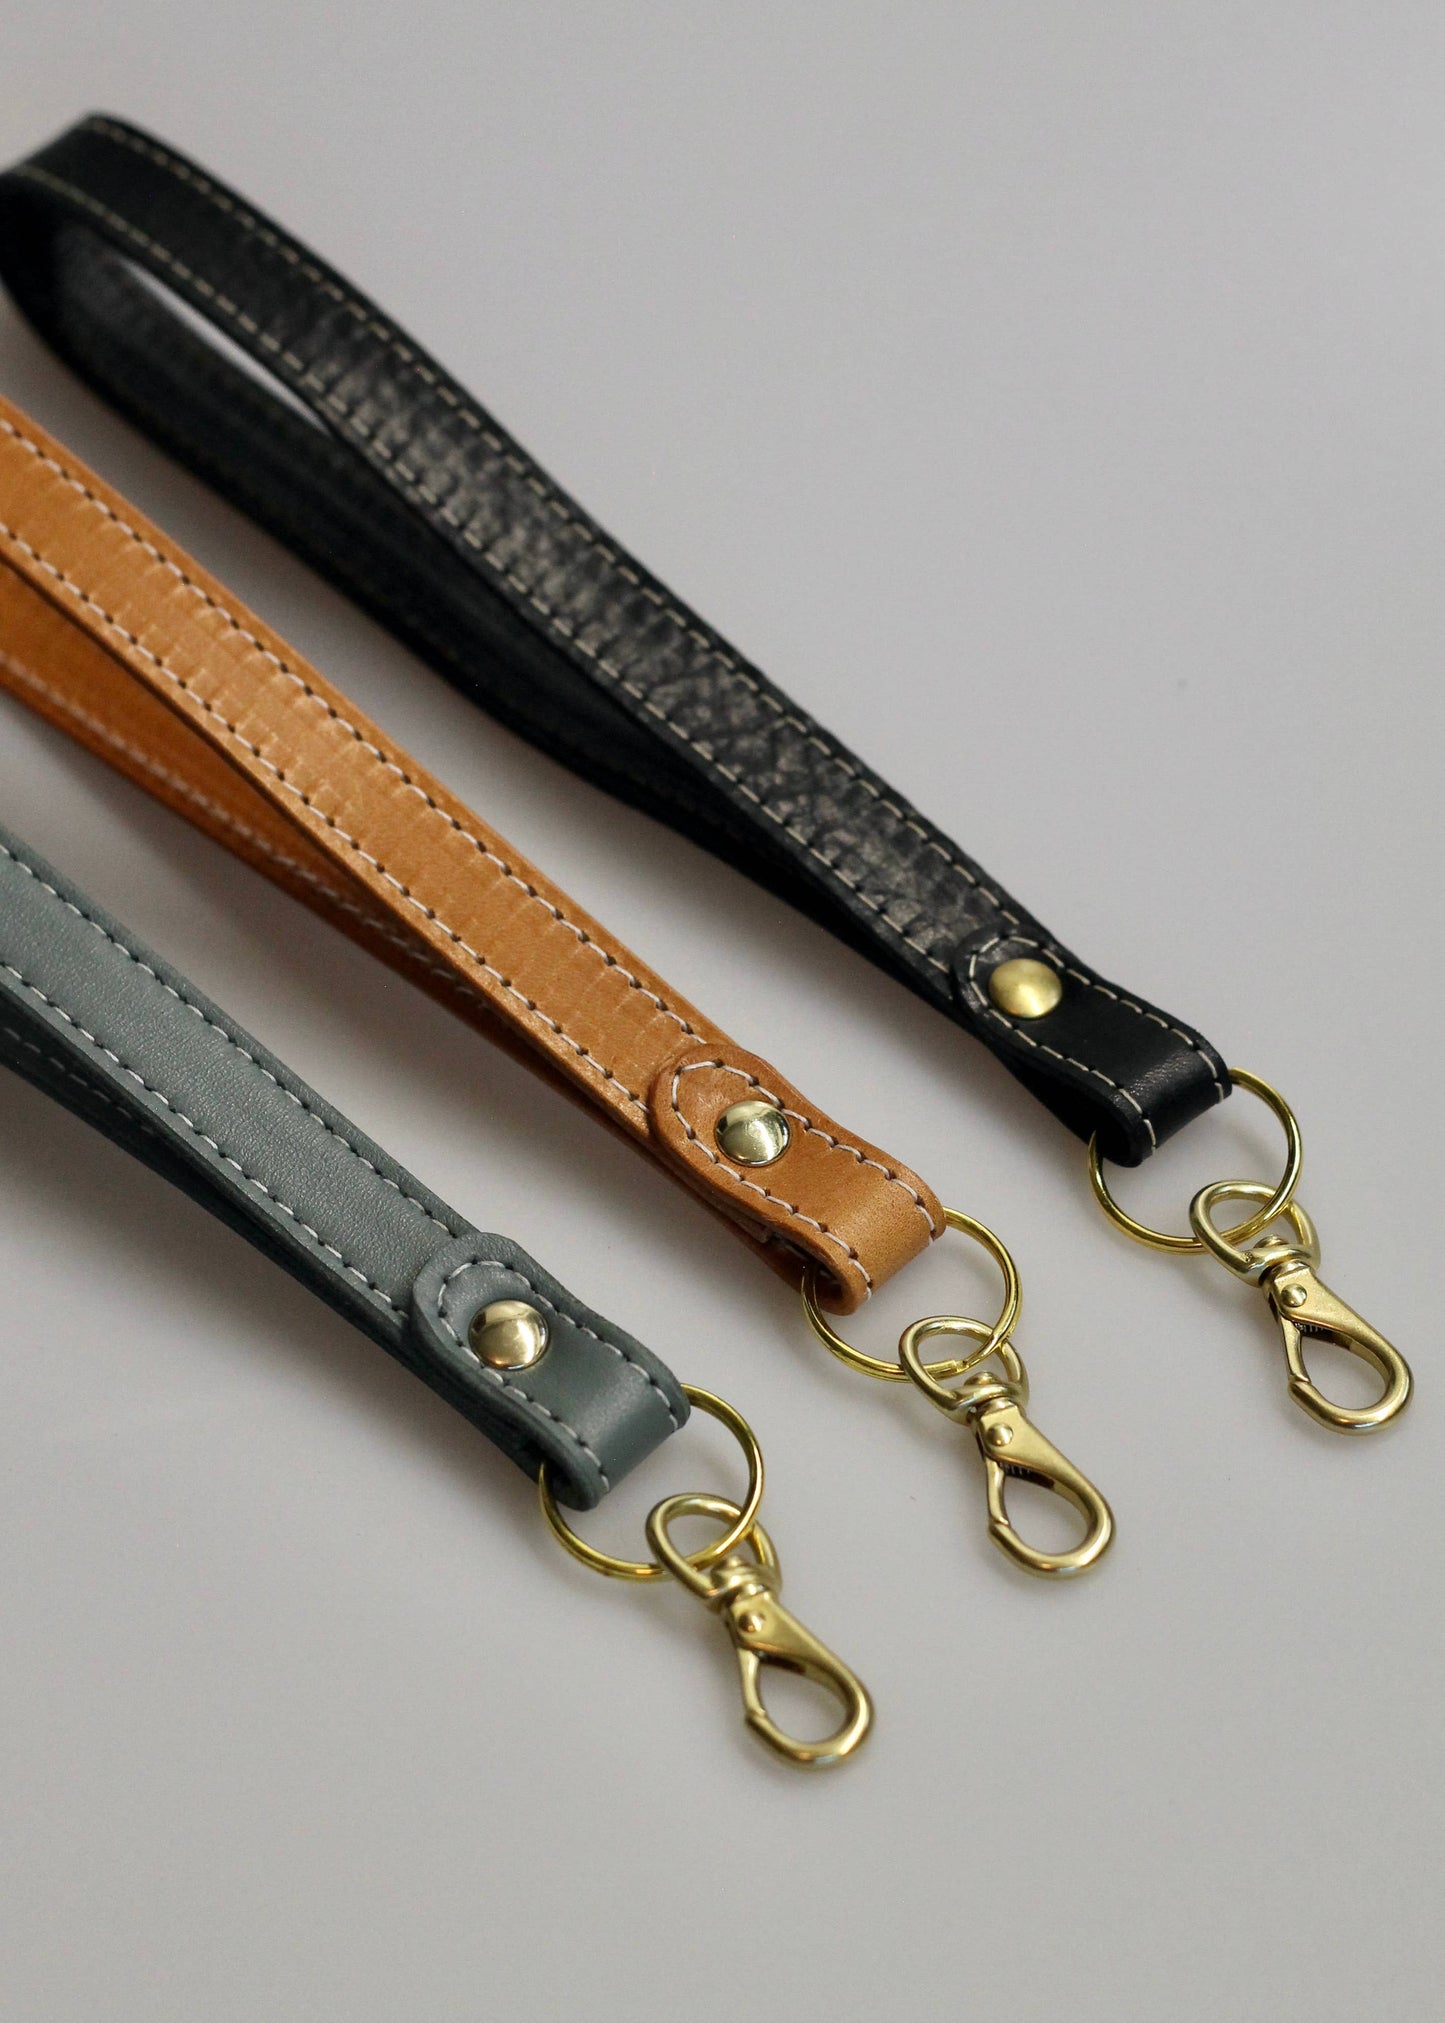 Key-leash: Saddle Tan